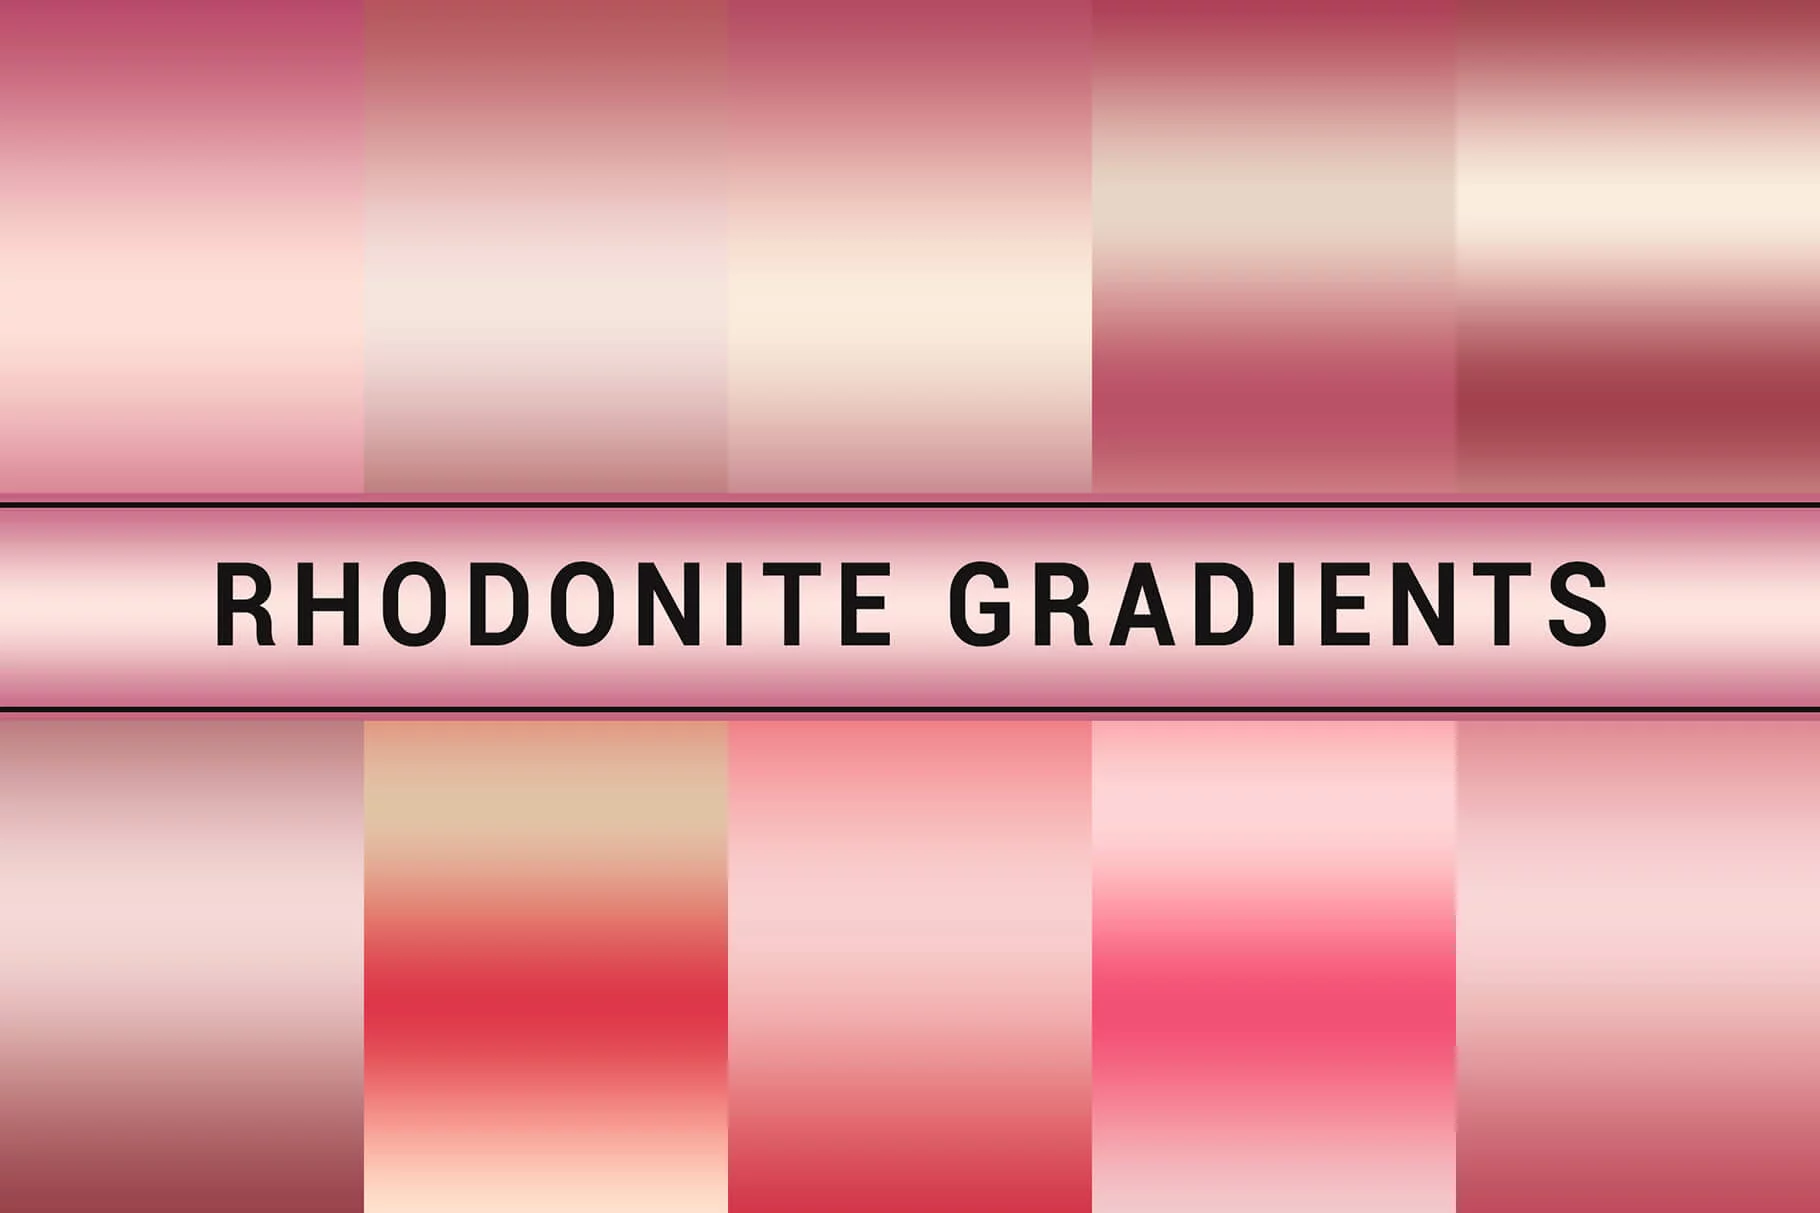 Rhodonite Gradients